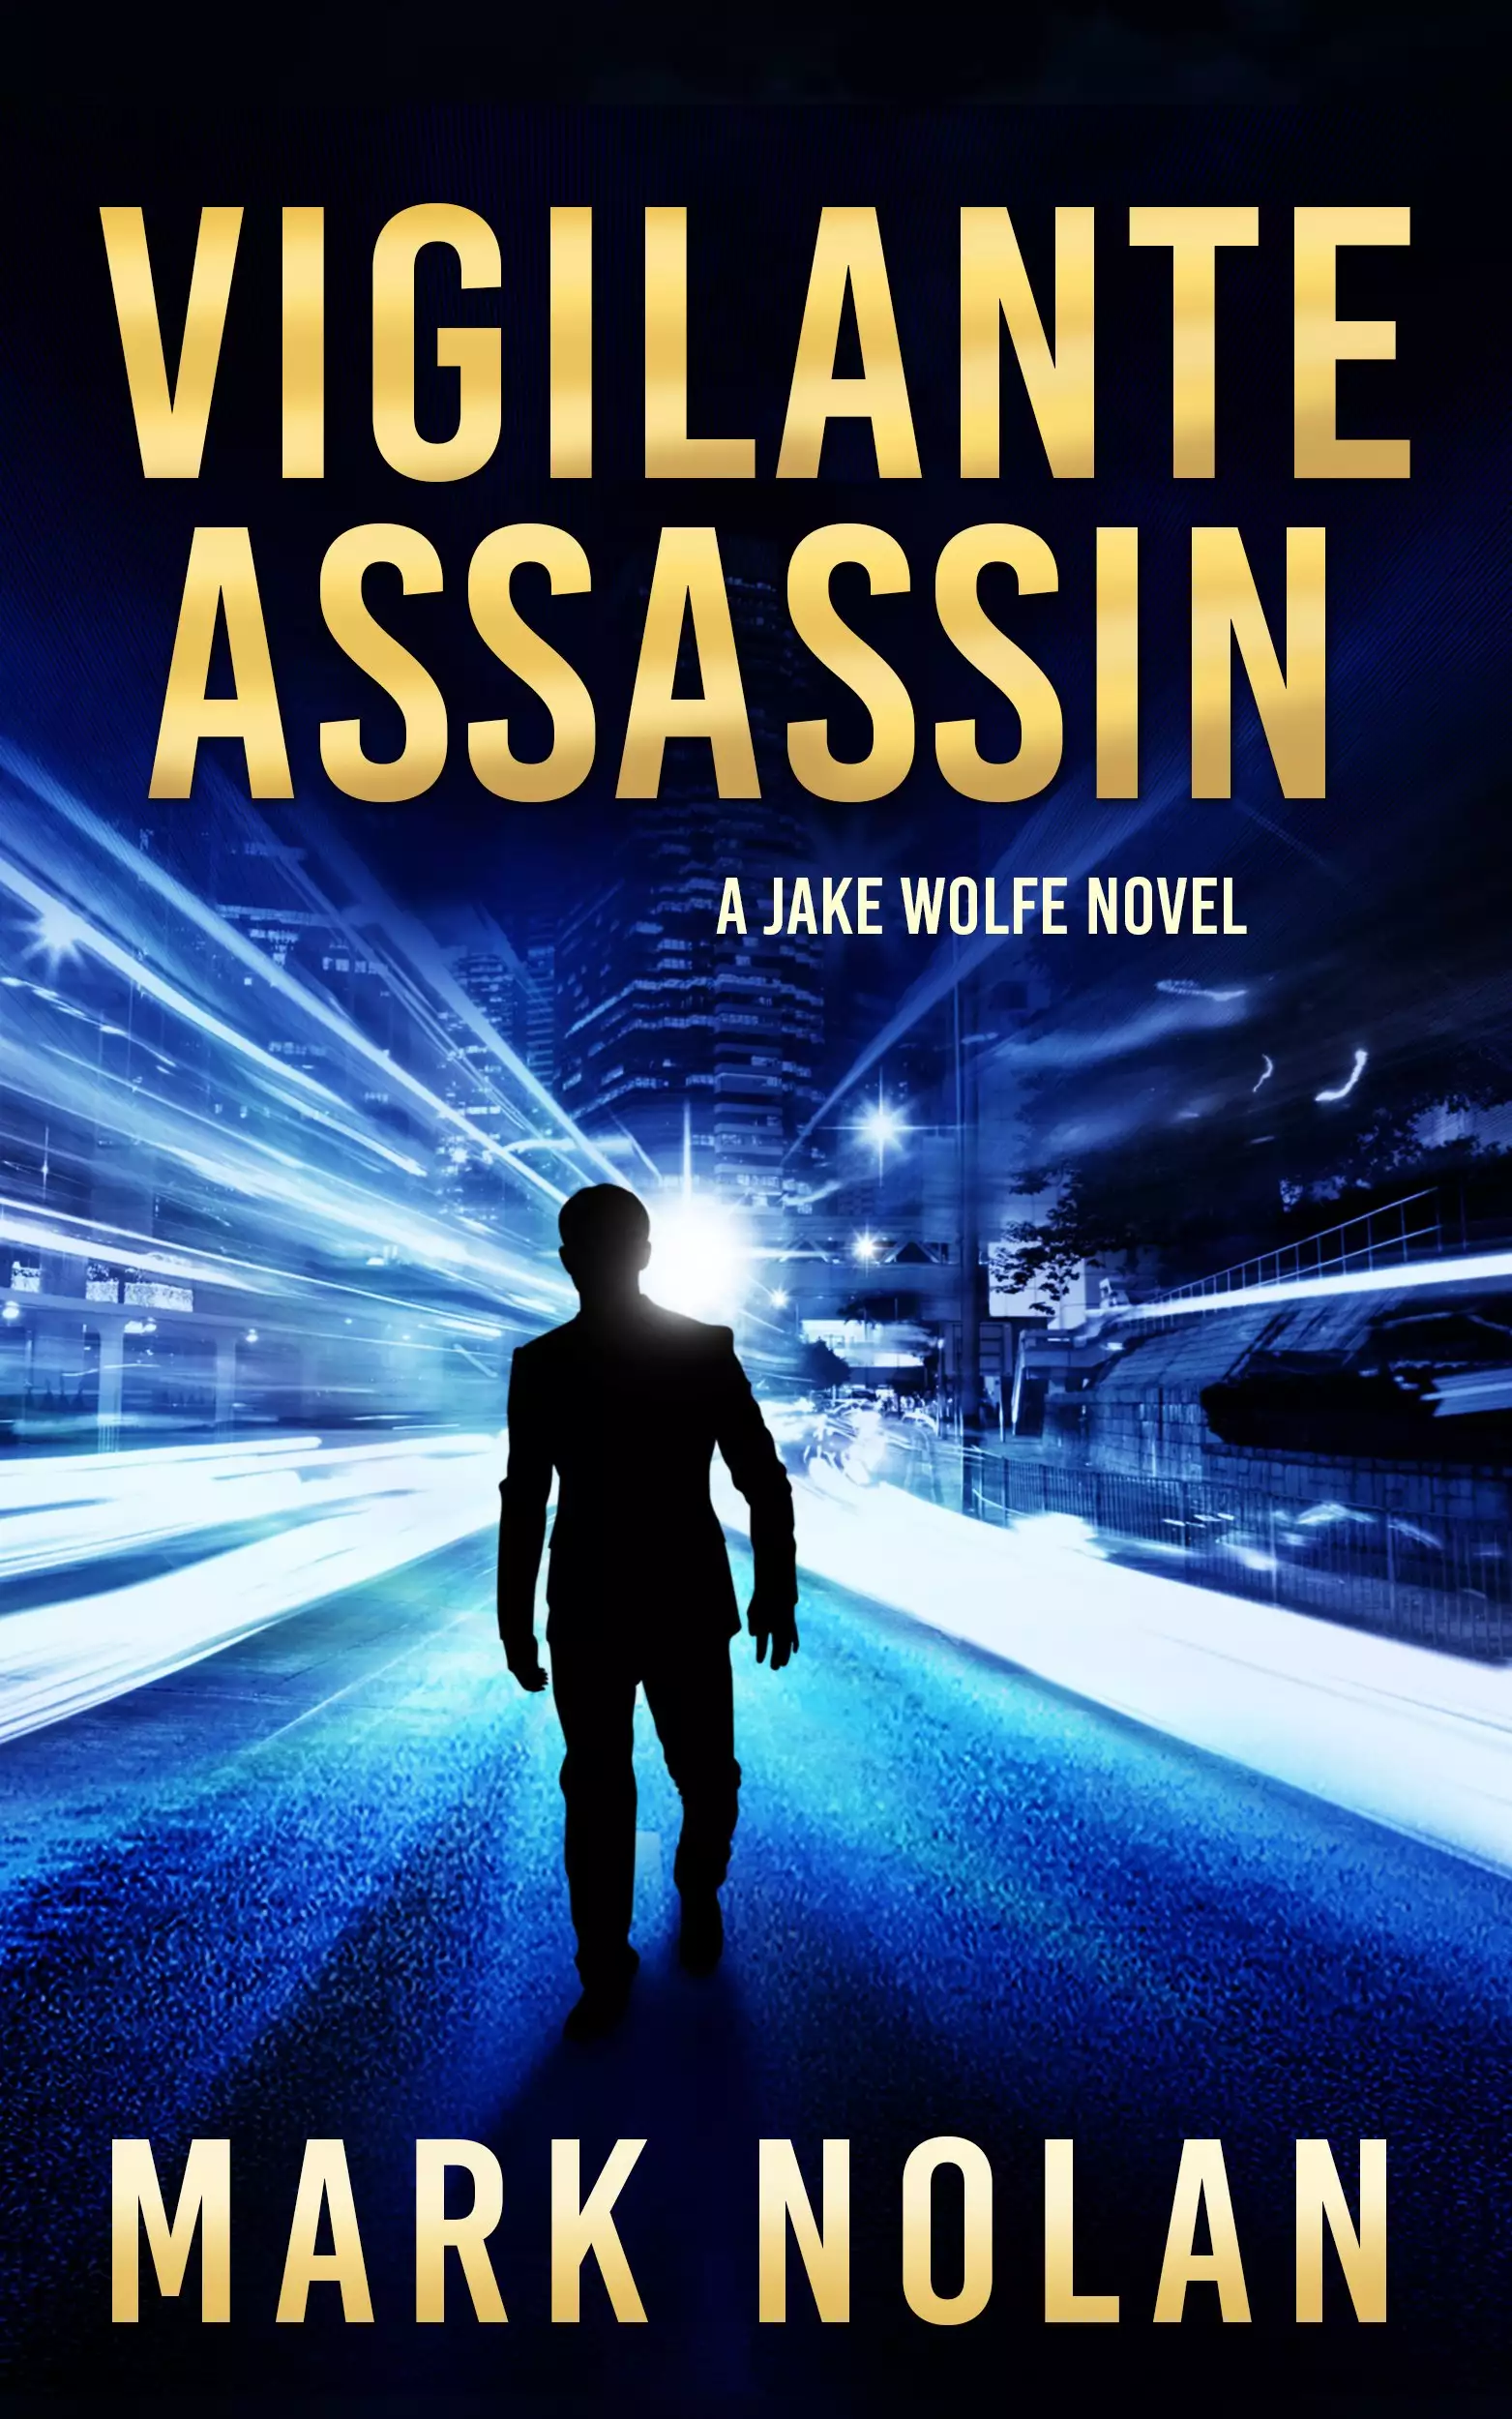 Vigilante Assassin: An Action Thriller